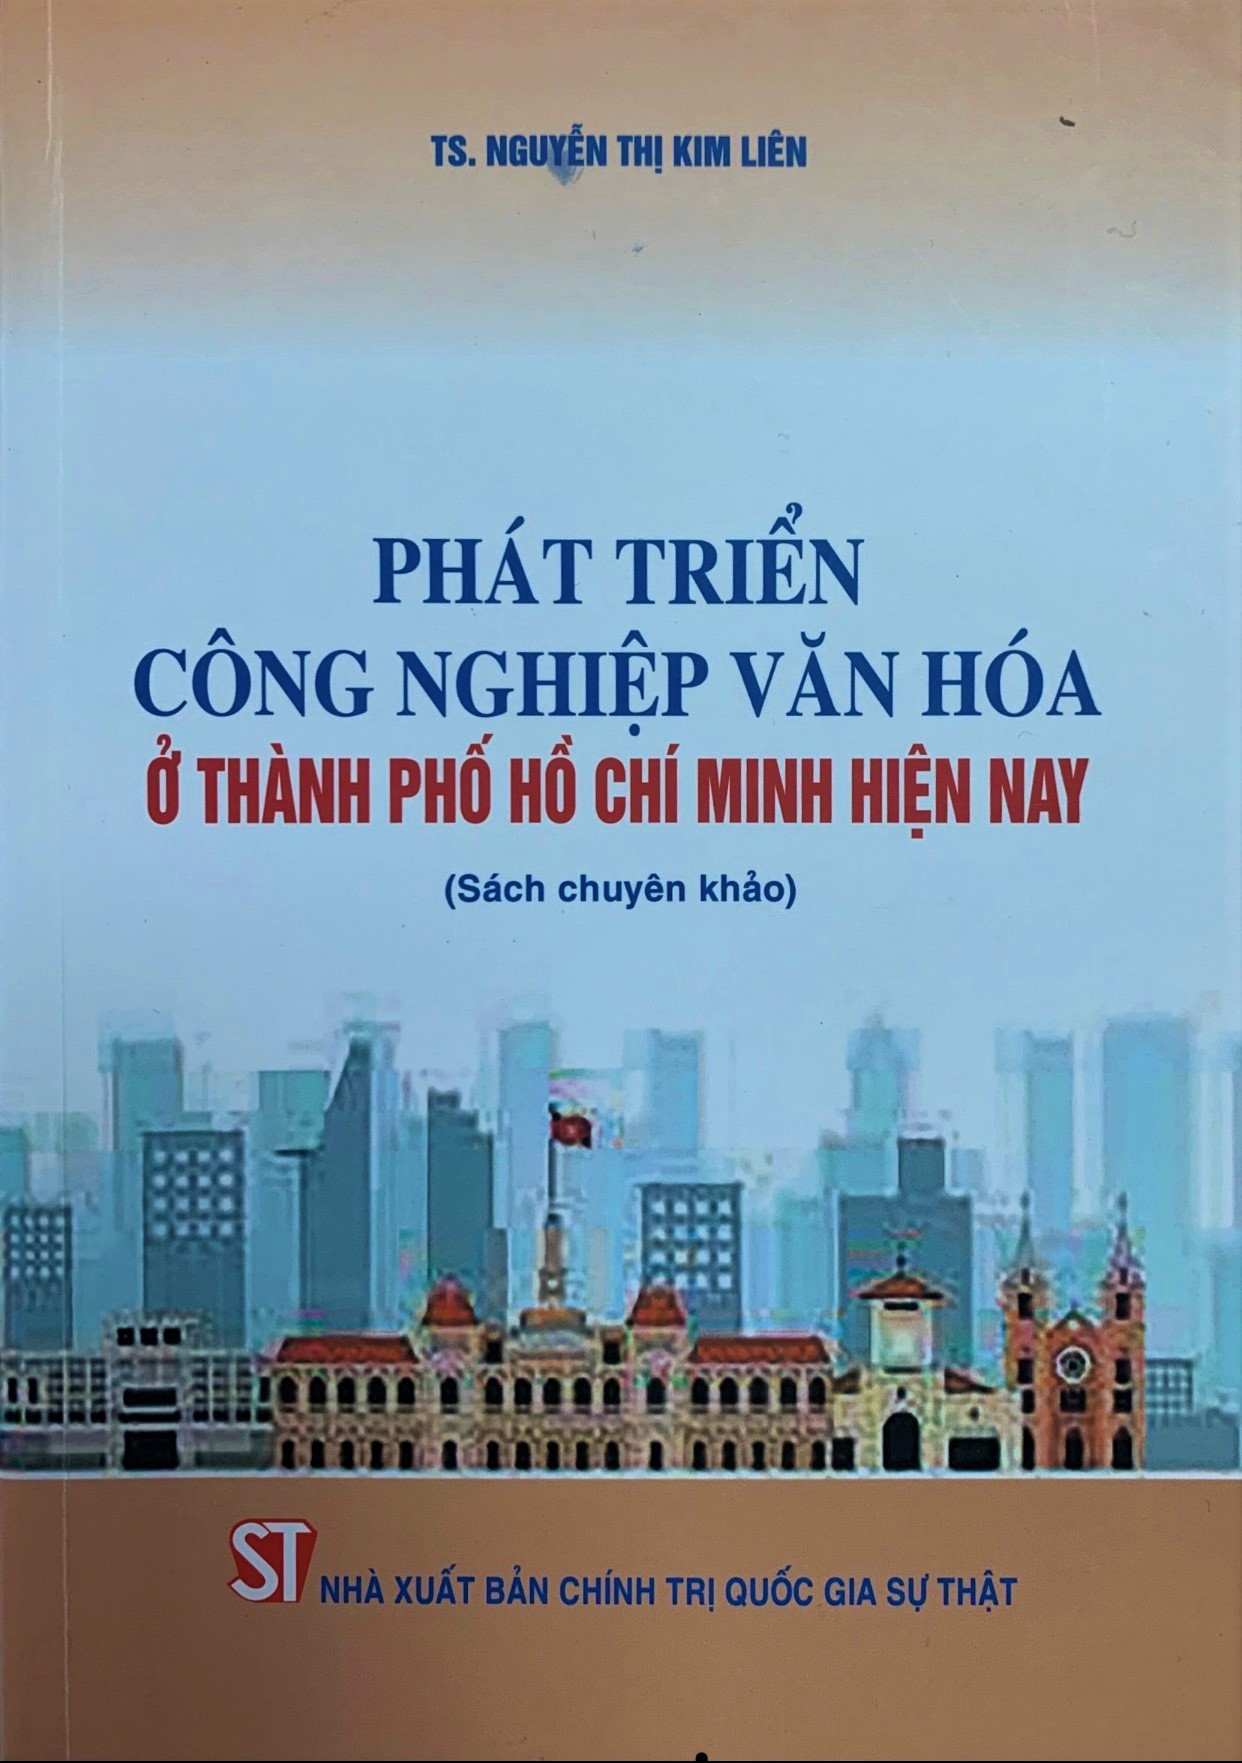 Phát triển công nghiệp văn hóa ở Thành phố Hồ Chí Minh hiện nay (Sách chuyên khảo)